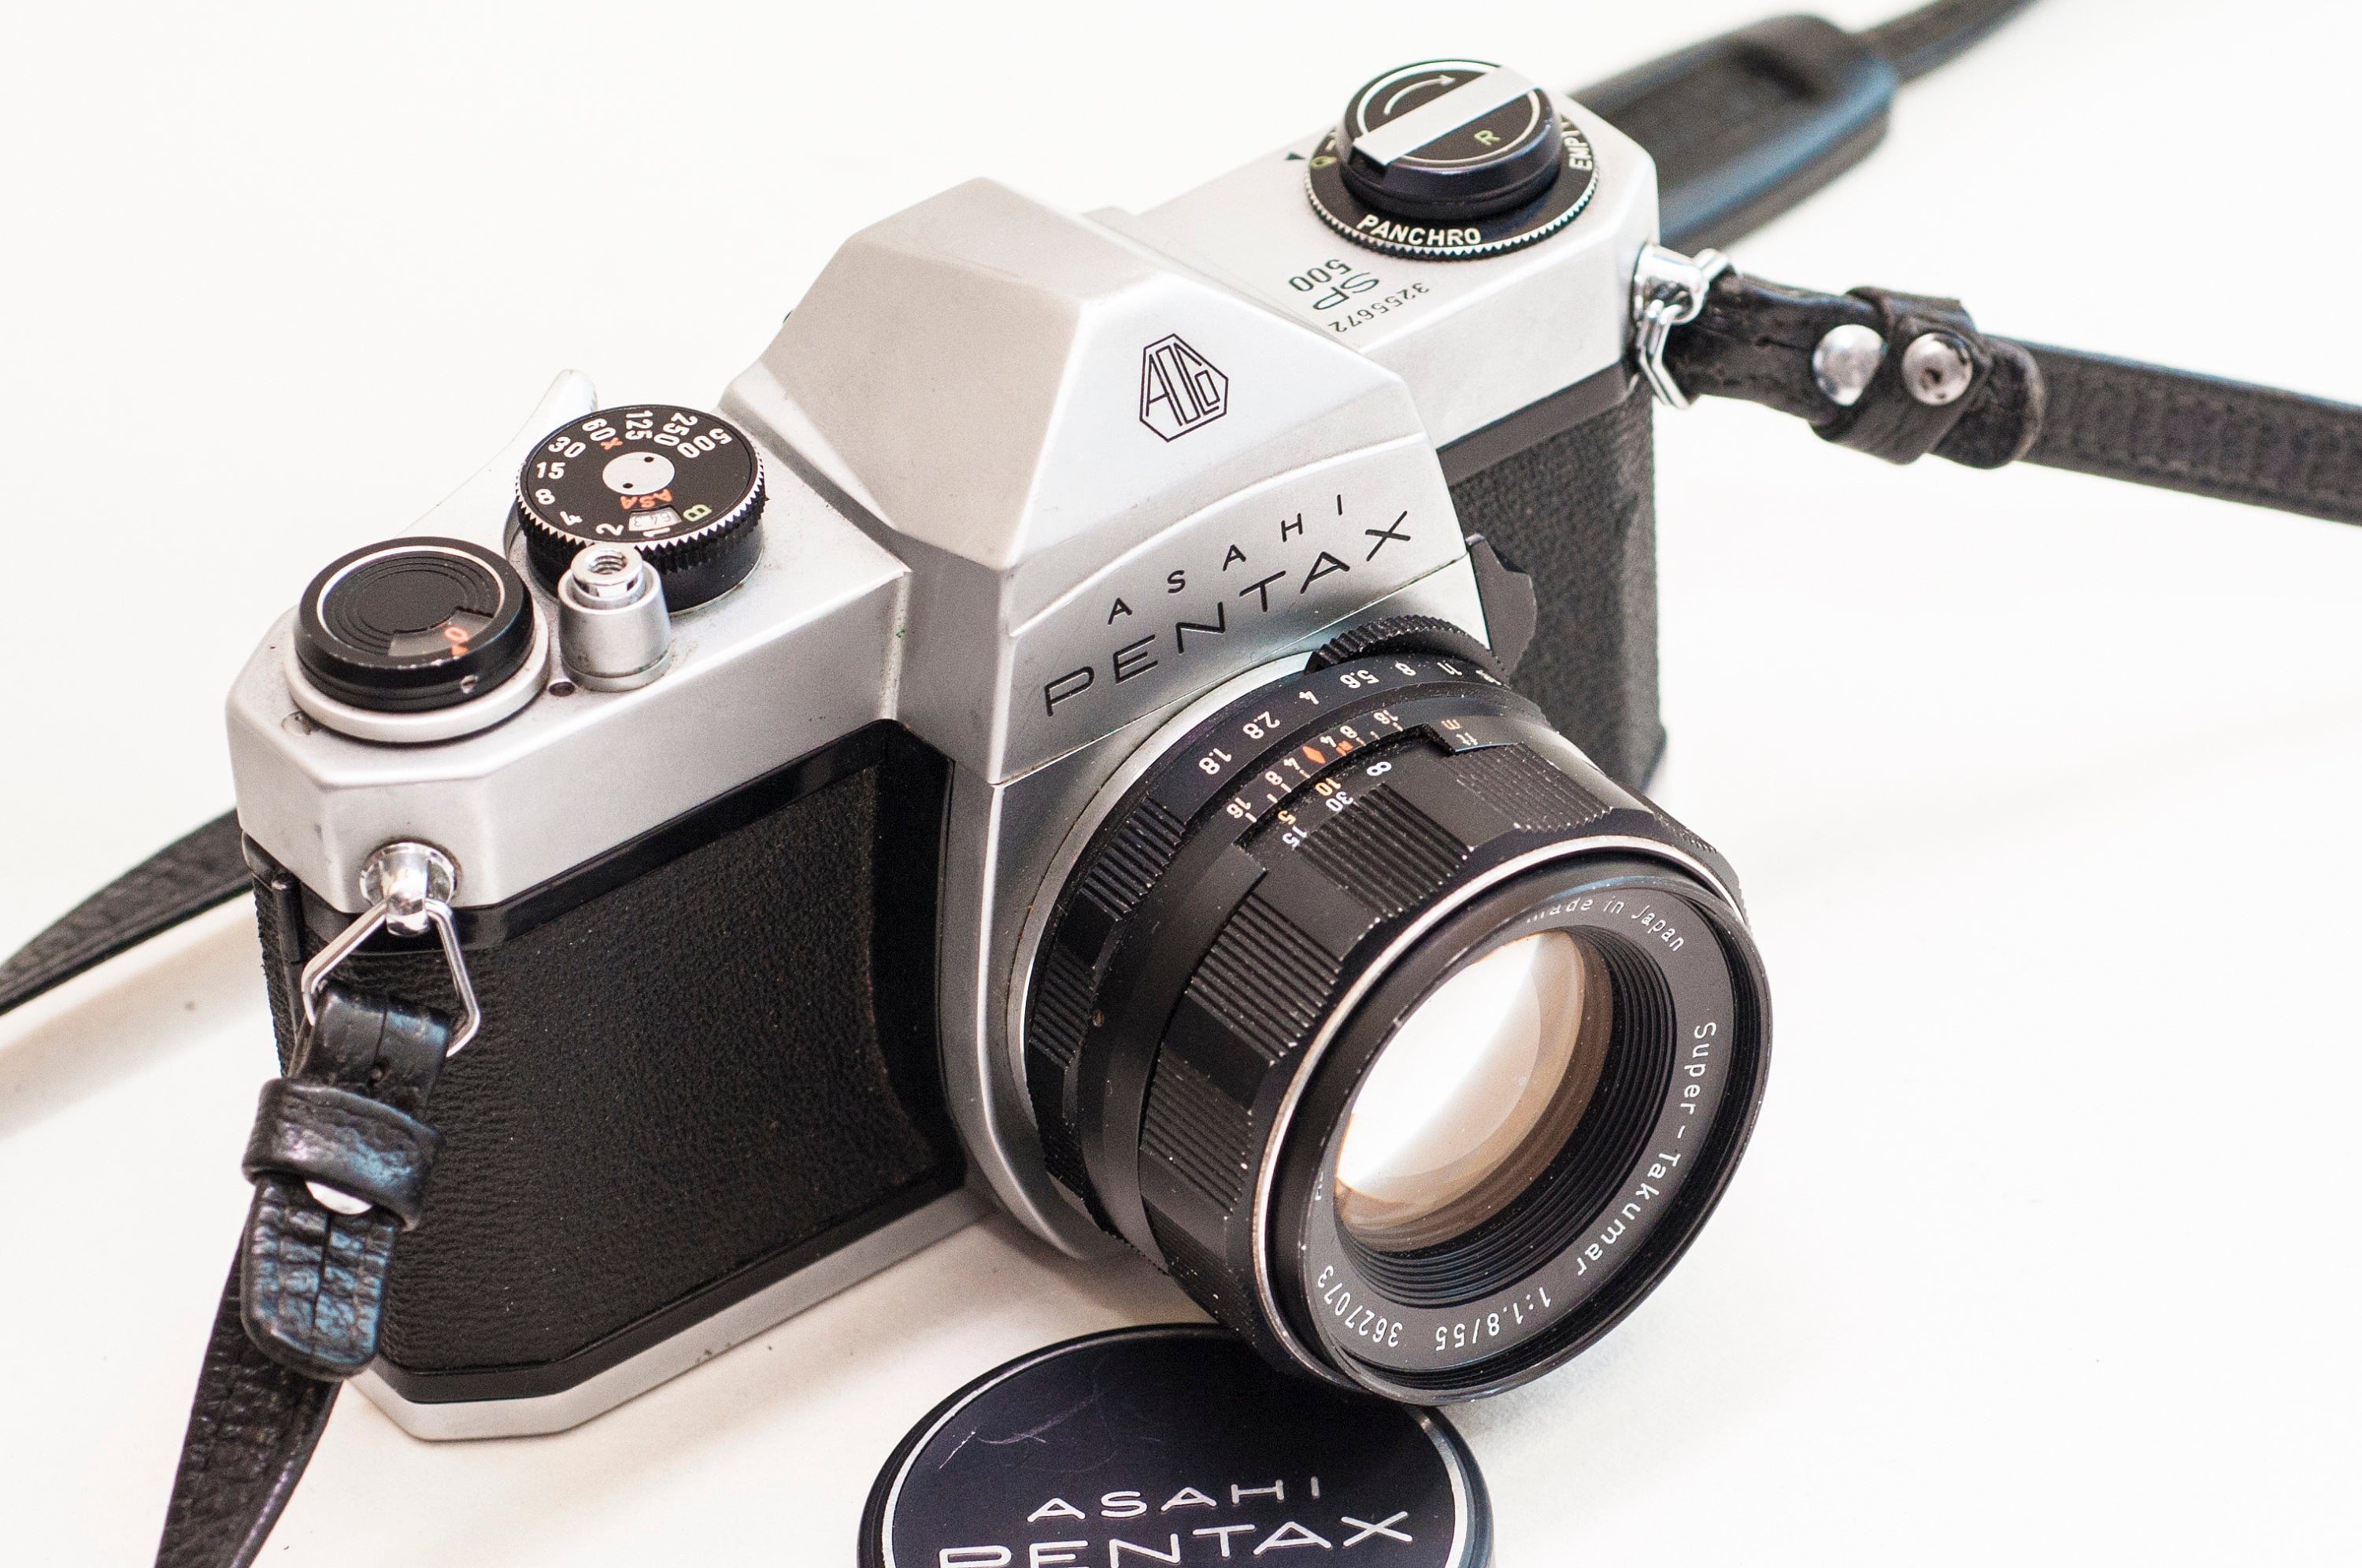 【フィルム一眼】PENTAX SP+TAKUMAR 55mm F1.8 2本付☆ ペンタックス カメラ フィルムカメラ 【本物保証